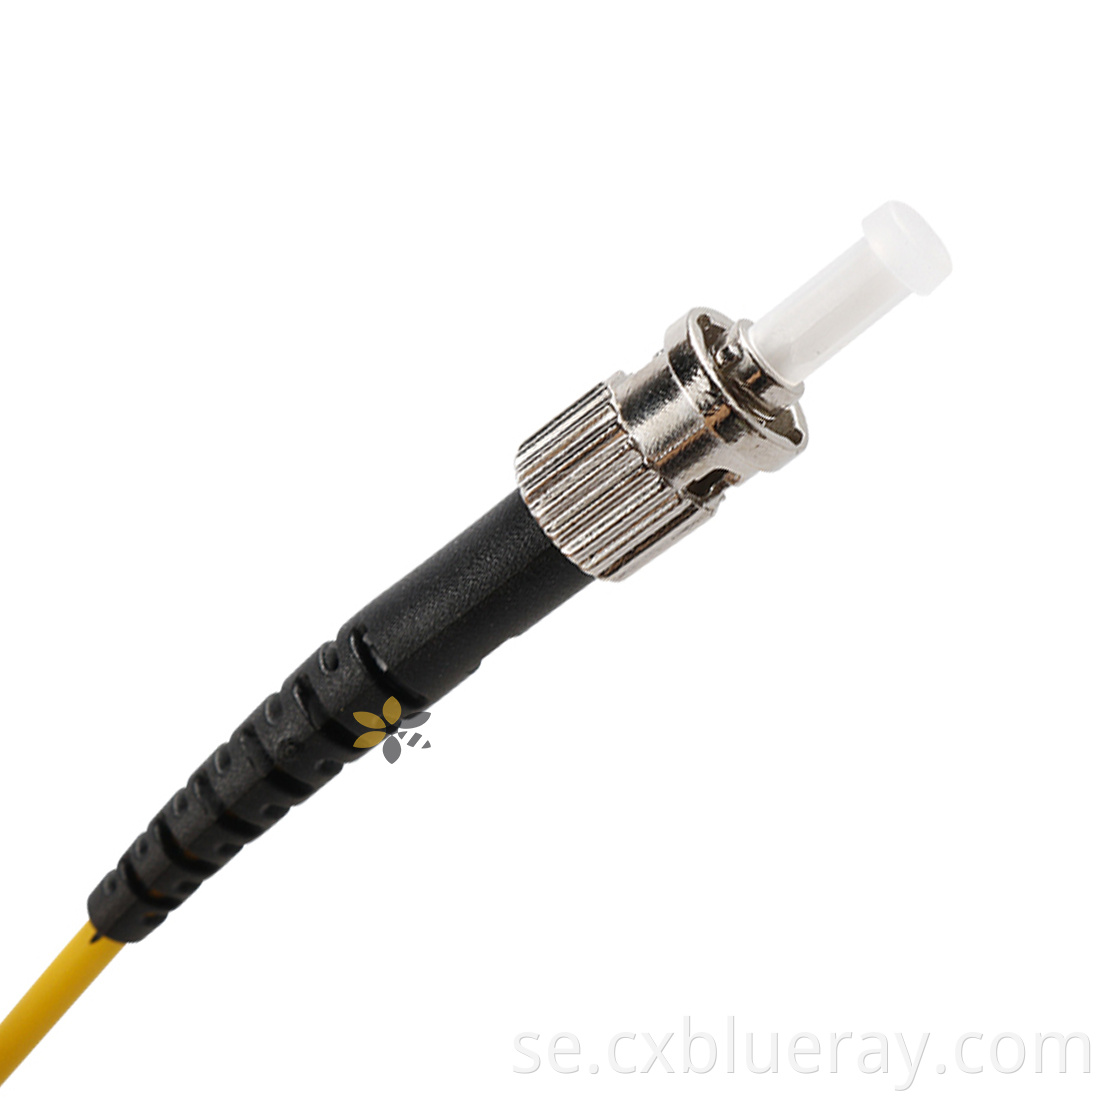 G652d Fiber Cable